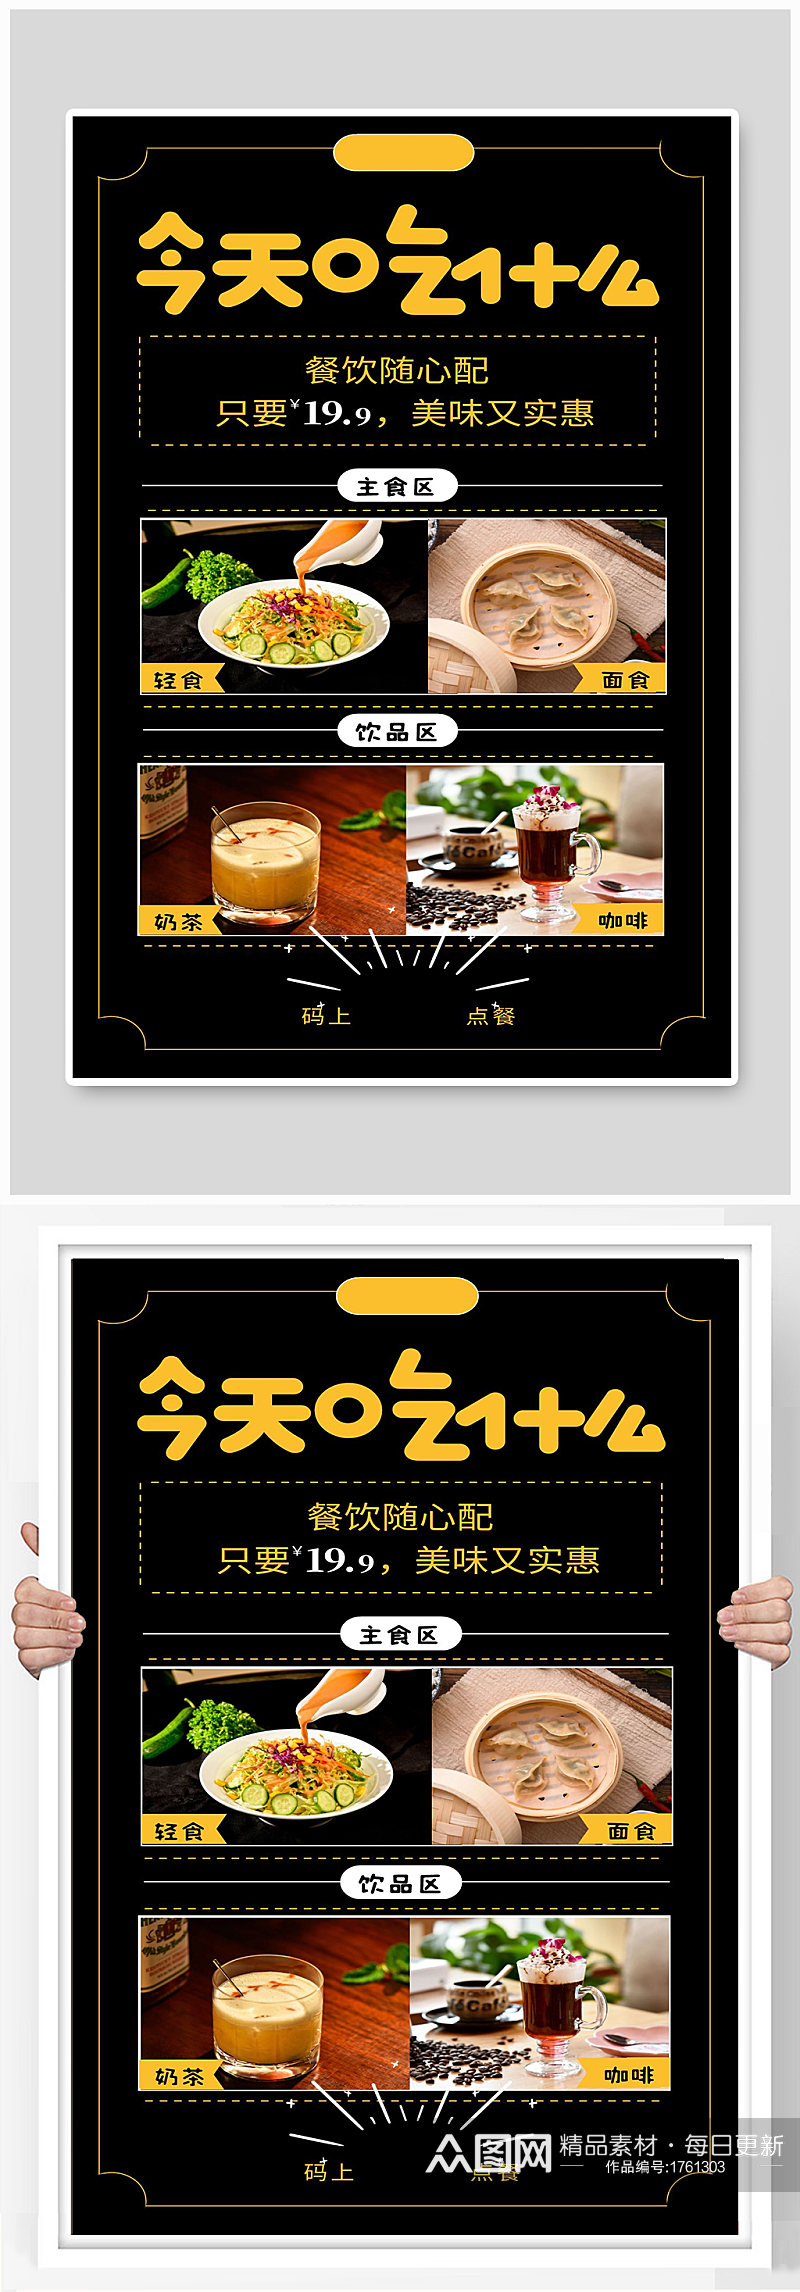 美食宣传海报设计制作素材